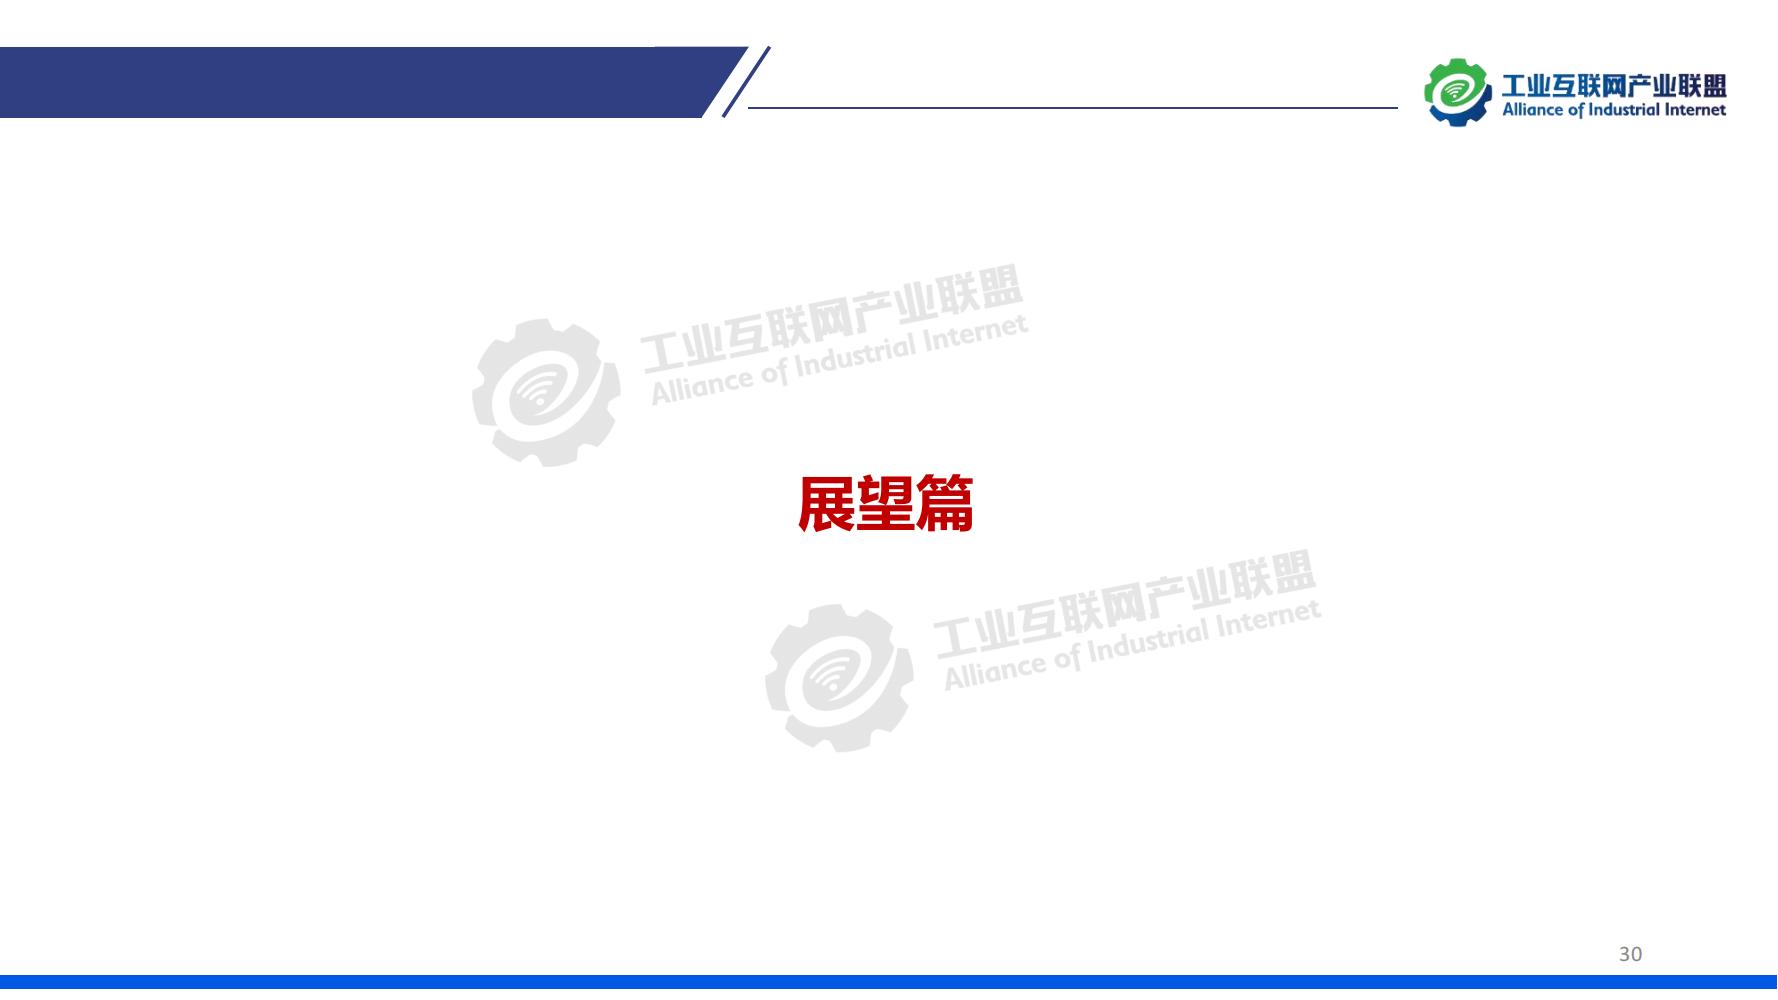 1-中国工业互联网发展成效评估报告-水印_29.jpg